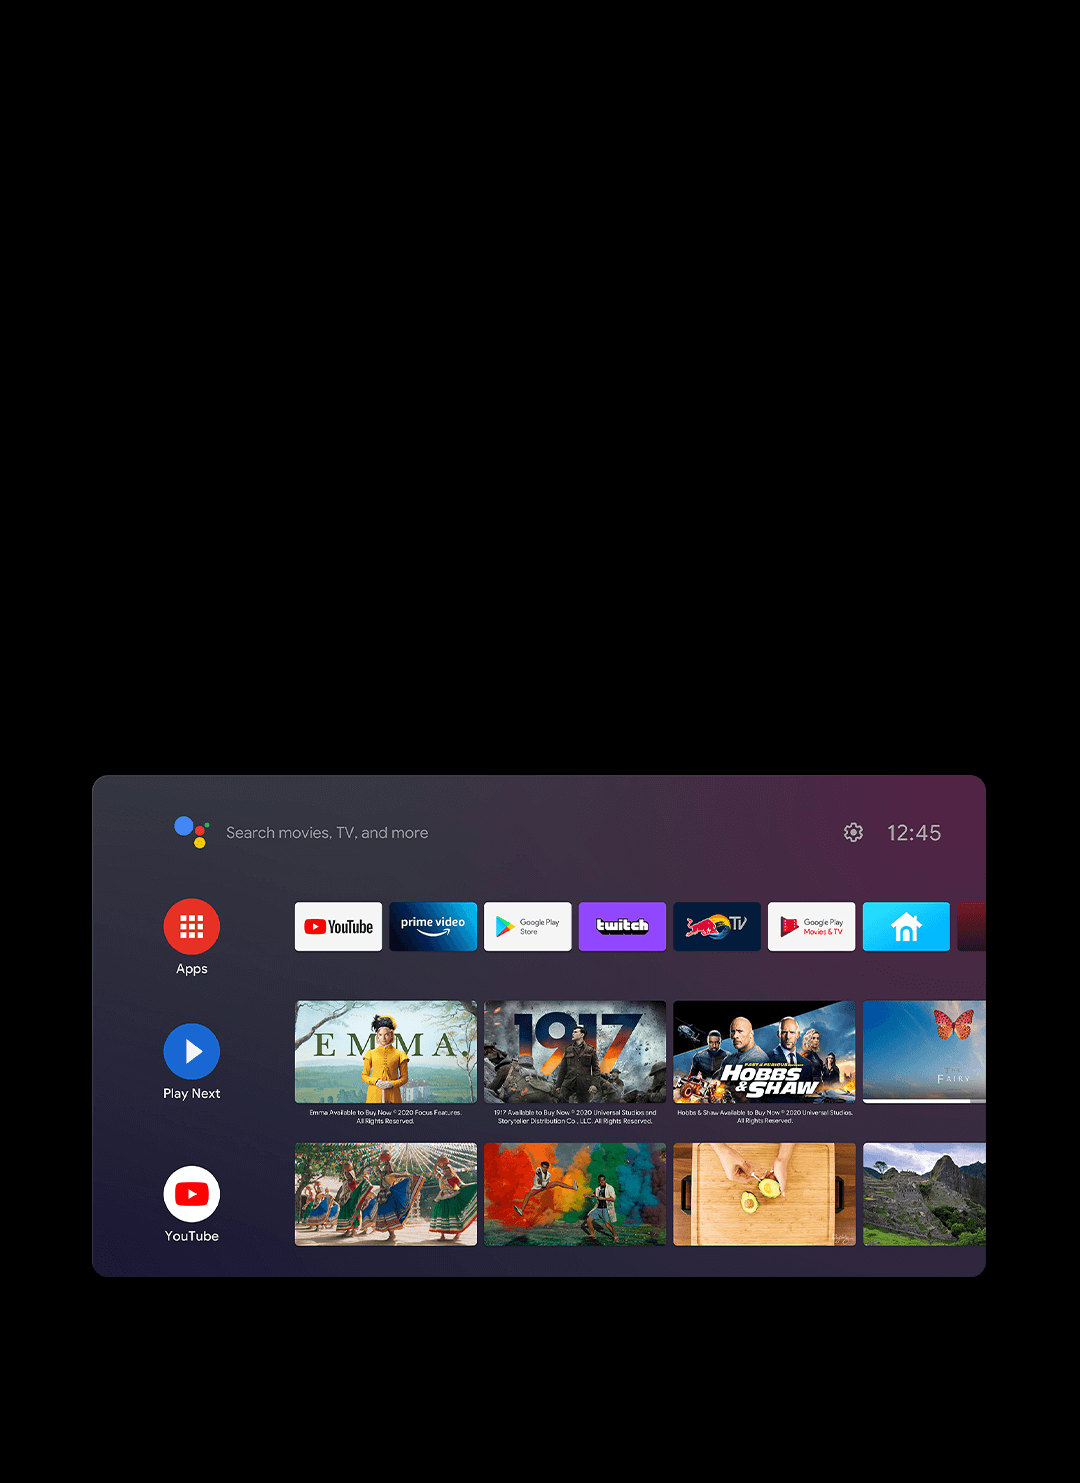 Xiaomi TV Max de 86 pulgadas: El televisor más grande de la marca ya está a  la venta en Perú, TECNOLOGIA